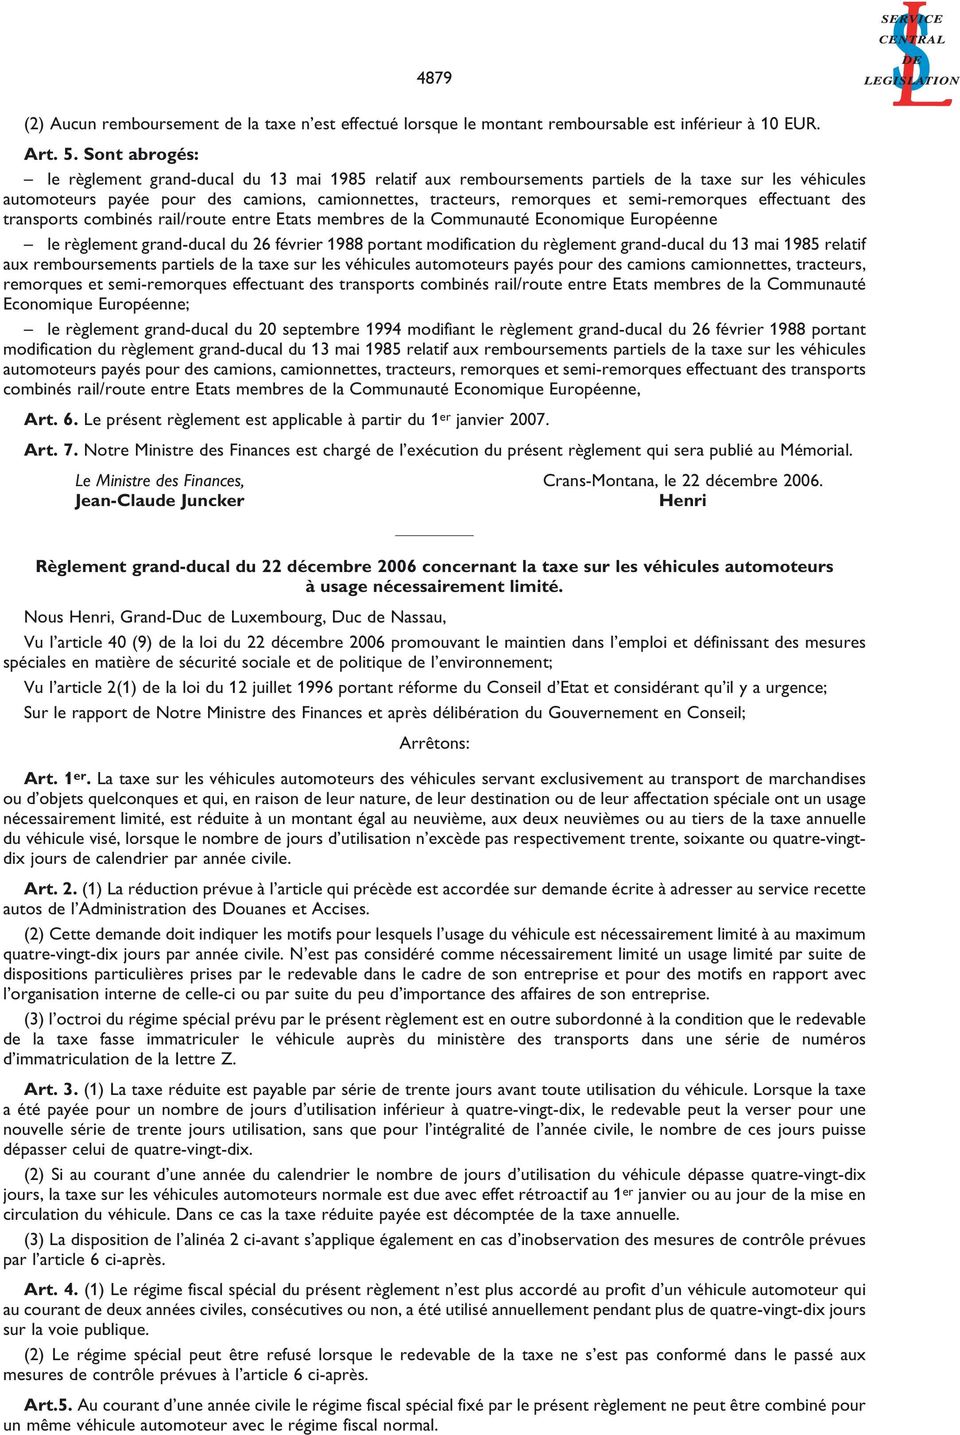 semi-remorques effectuant des transports combinés rail/route entre Etats membres de la Communauté Economique Européenne le règlement grand-ducal du 26 février 1988 portant modification du règlement